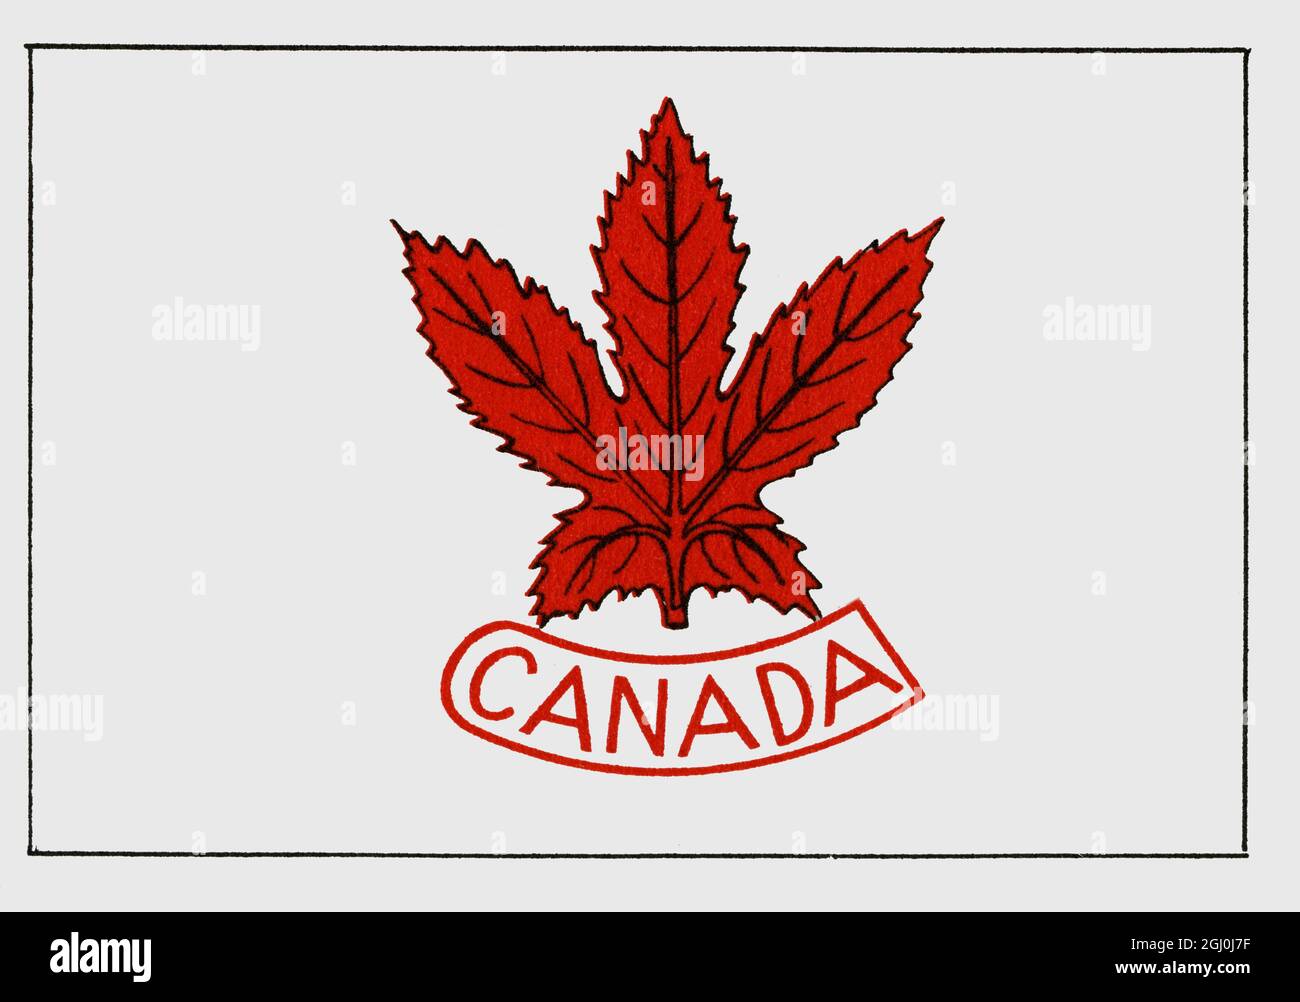 Kanada - Canadian Olympic Committee, Toronto, Ontario - 115 Teilnehmer ©TopFoto Stockfoto